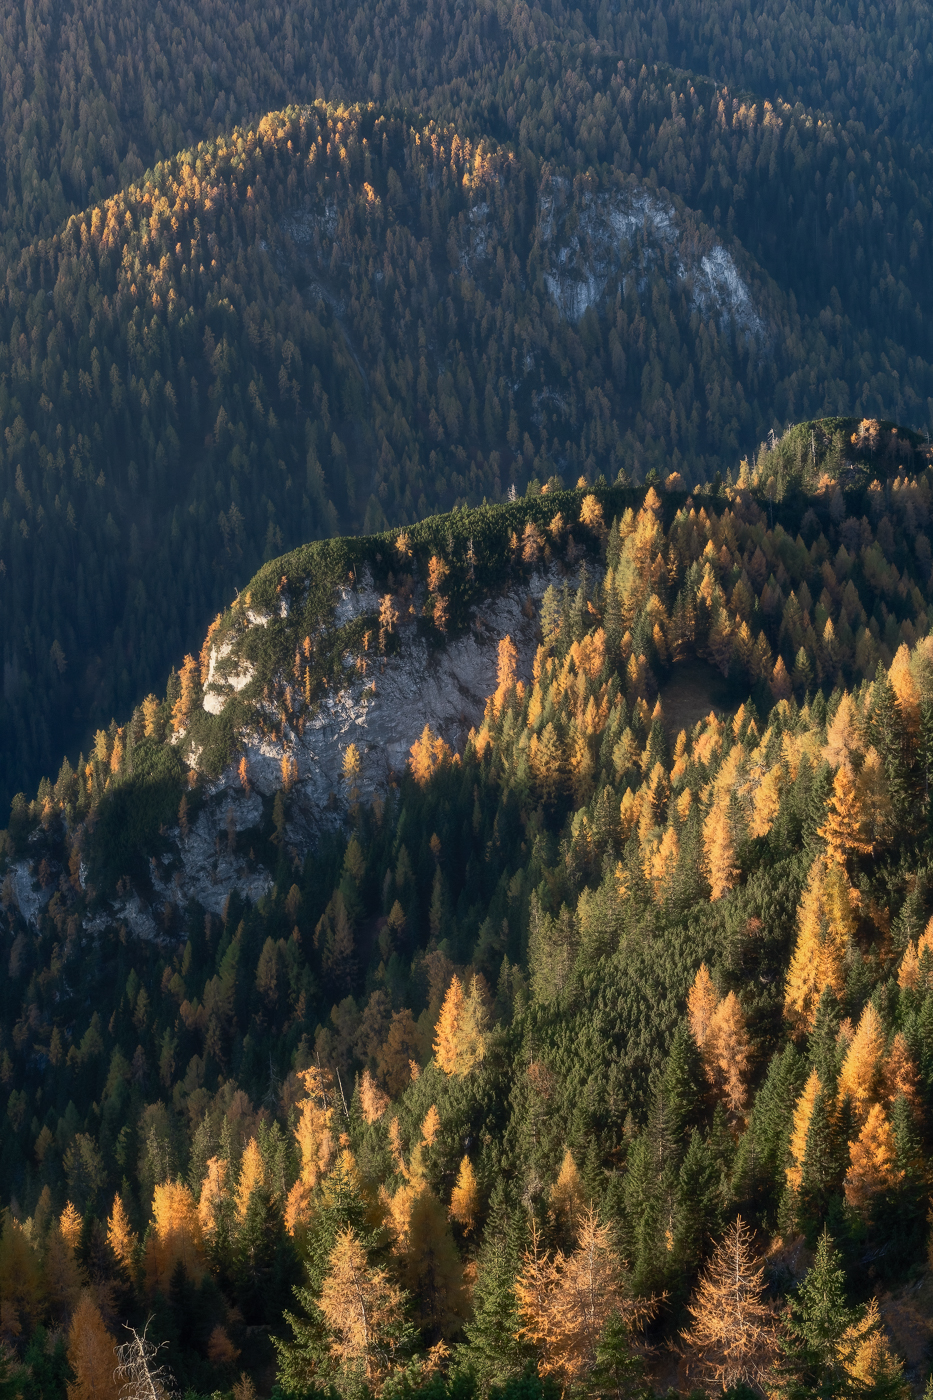 Foreste autunnali variopinte donano tridimensionalità alle valli alpine. Dolomiti Friulane, Italia.